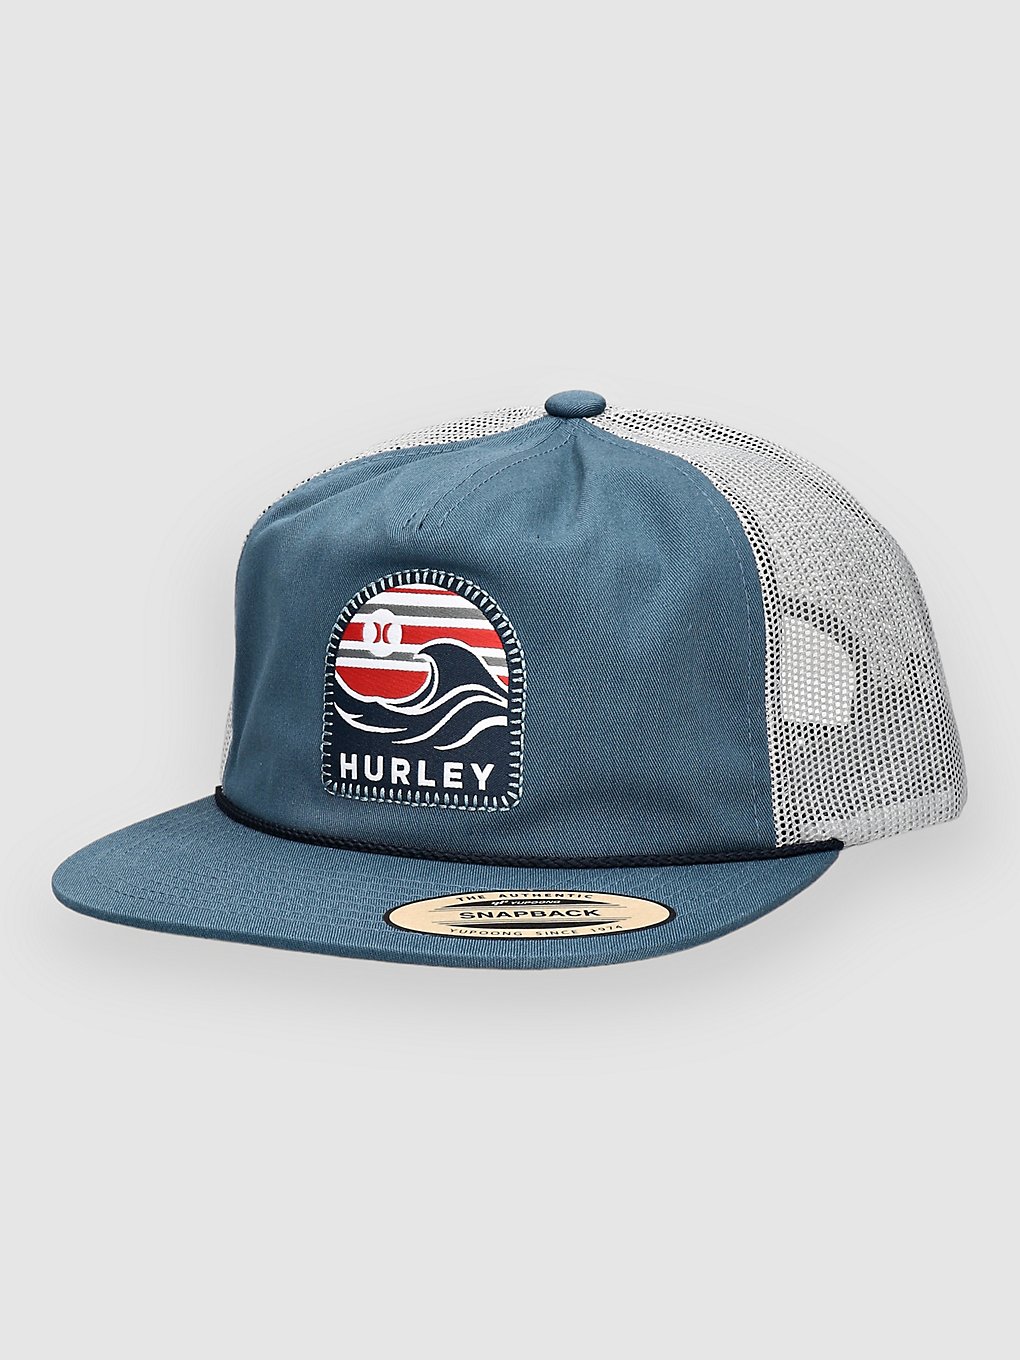 Hurley Mavericks Cap armory navy kaufen